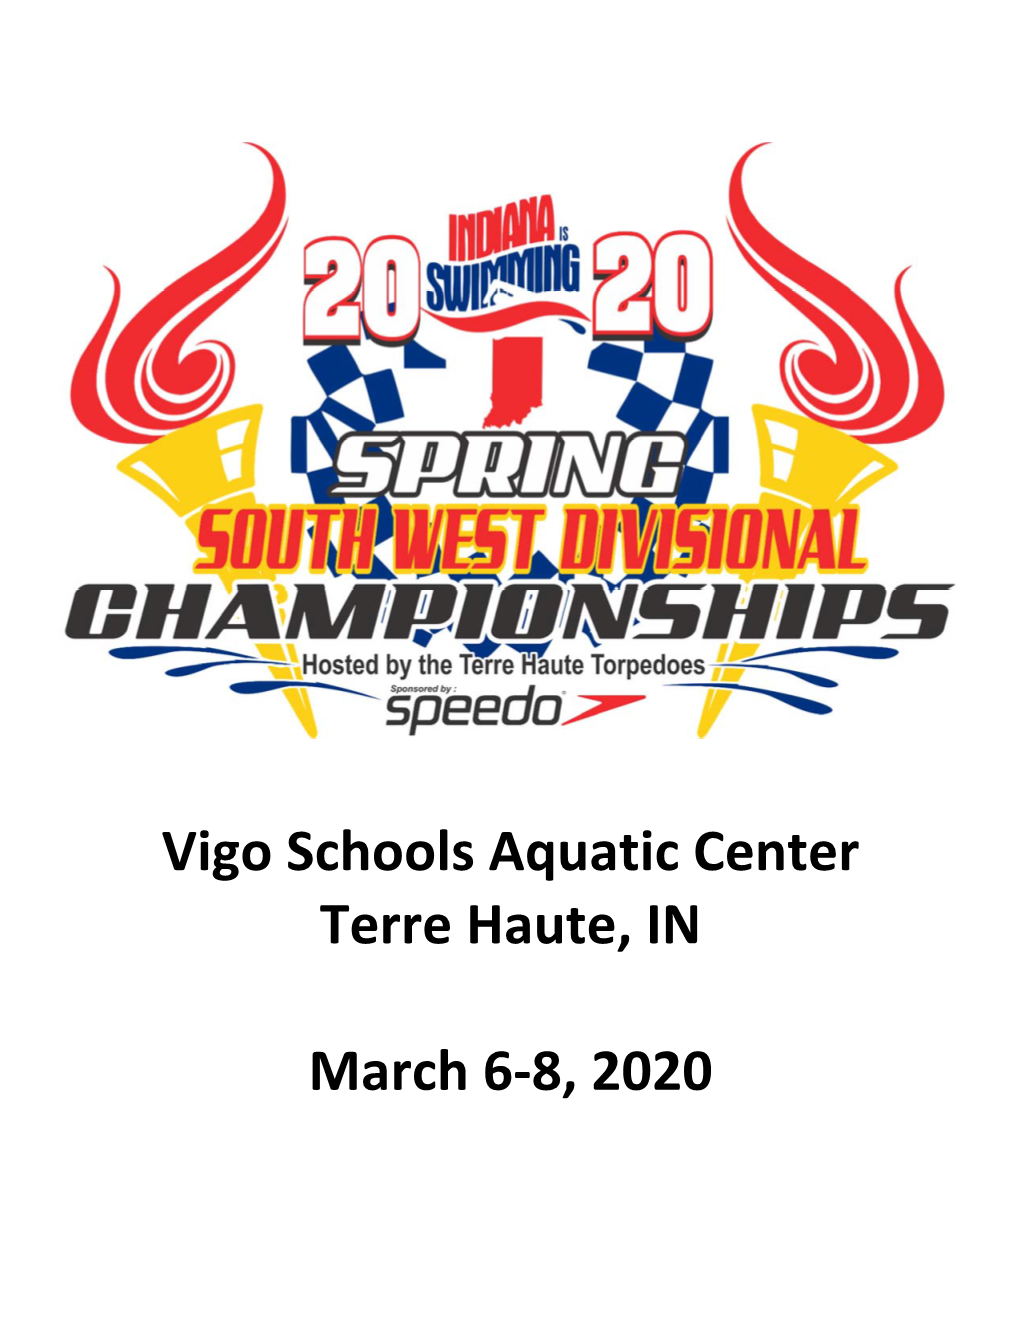 Vigo Schools Aquatic Center Terre Haute, in March 6-8, 2020